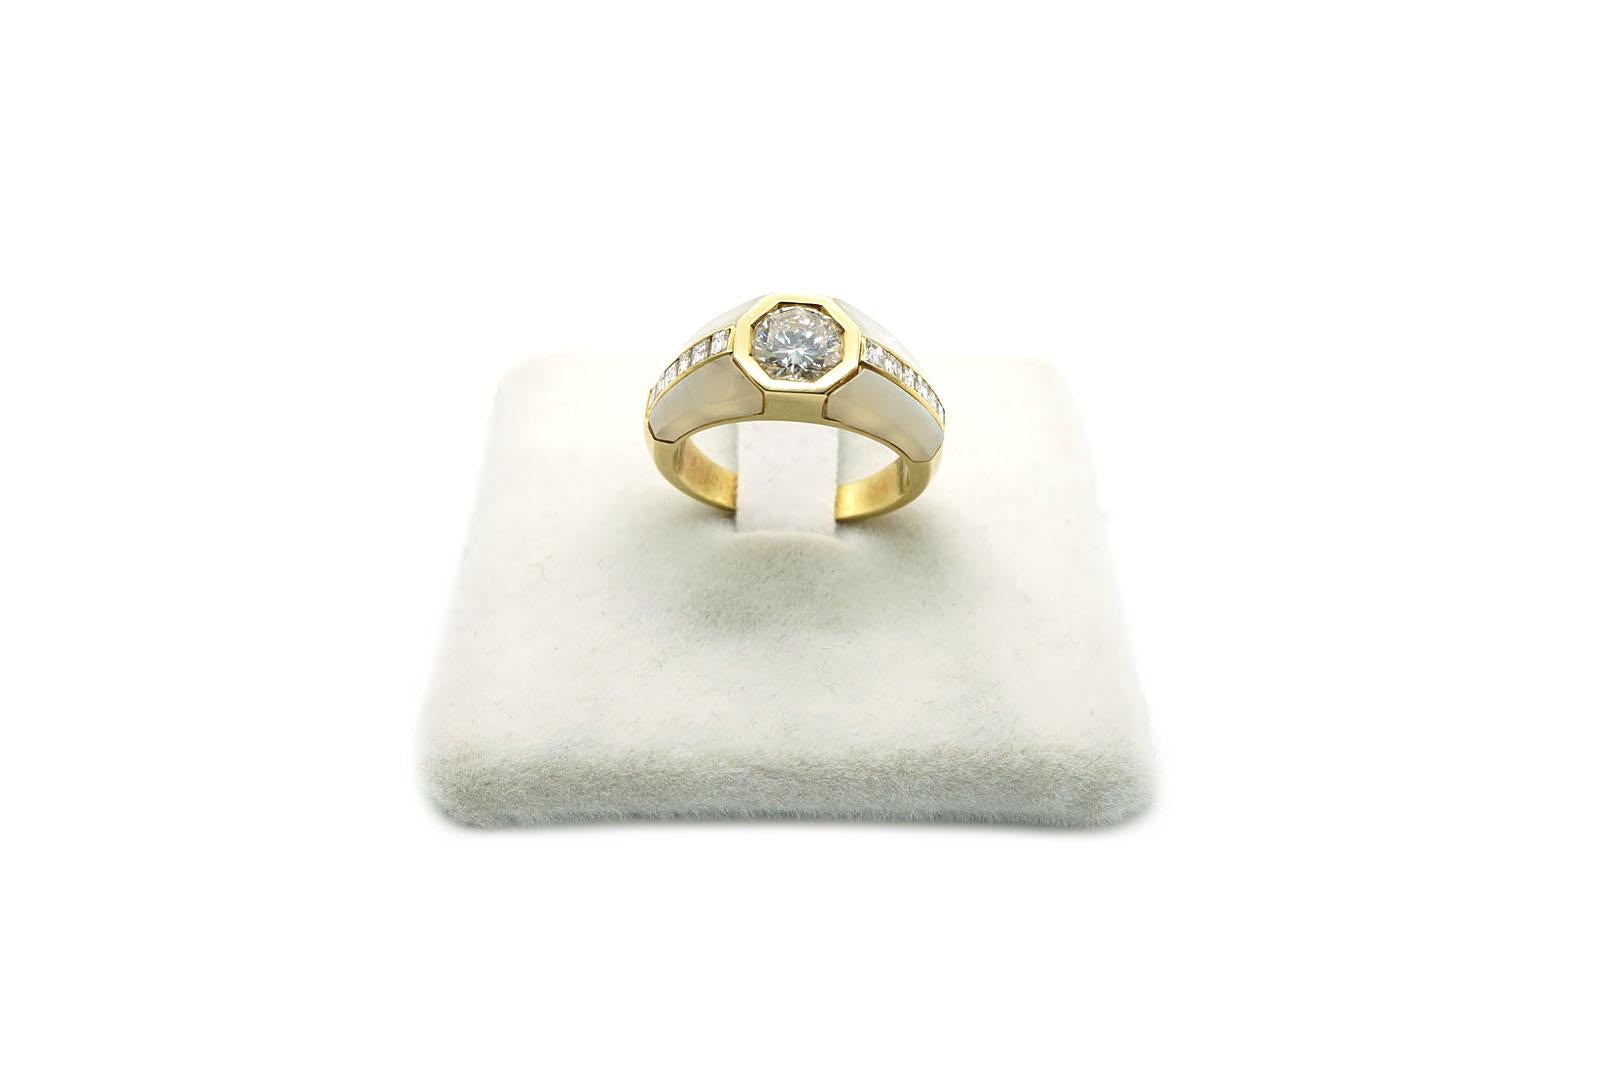 Dieser schöne Solitärring ist aus 18 kt Gelbgold ( Gr 6.00 ).
Der zentrale Diamant hat eine sechseckige Fassung und wiegt 1,05 Ct.
Der Ring ist mit Perlmutteinsätzen und zwei Reihen von Diamanten im Carre-Schliff mit einem Gewicht von 0,38 Ct